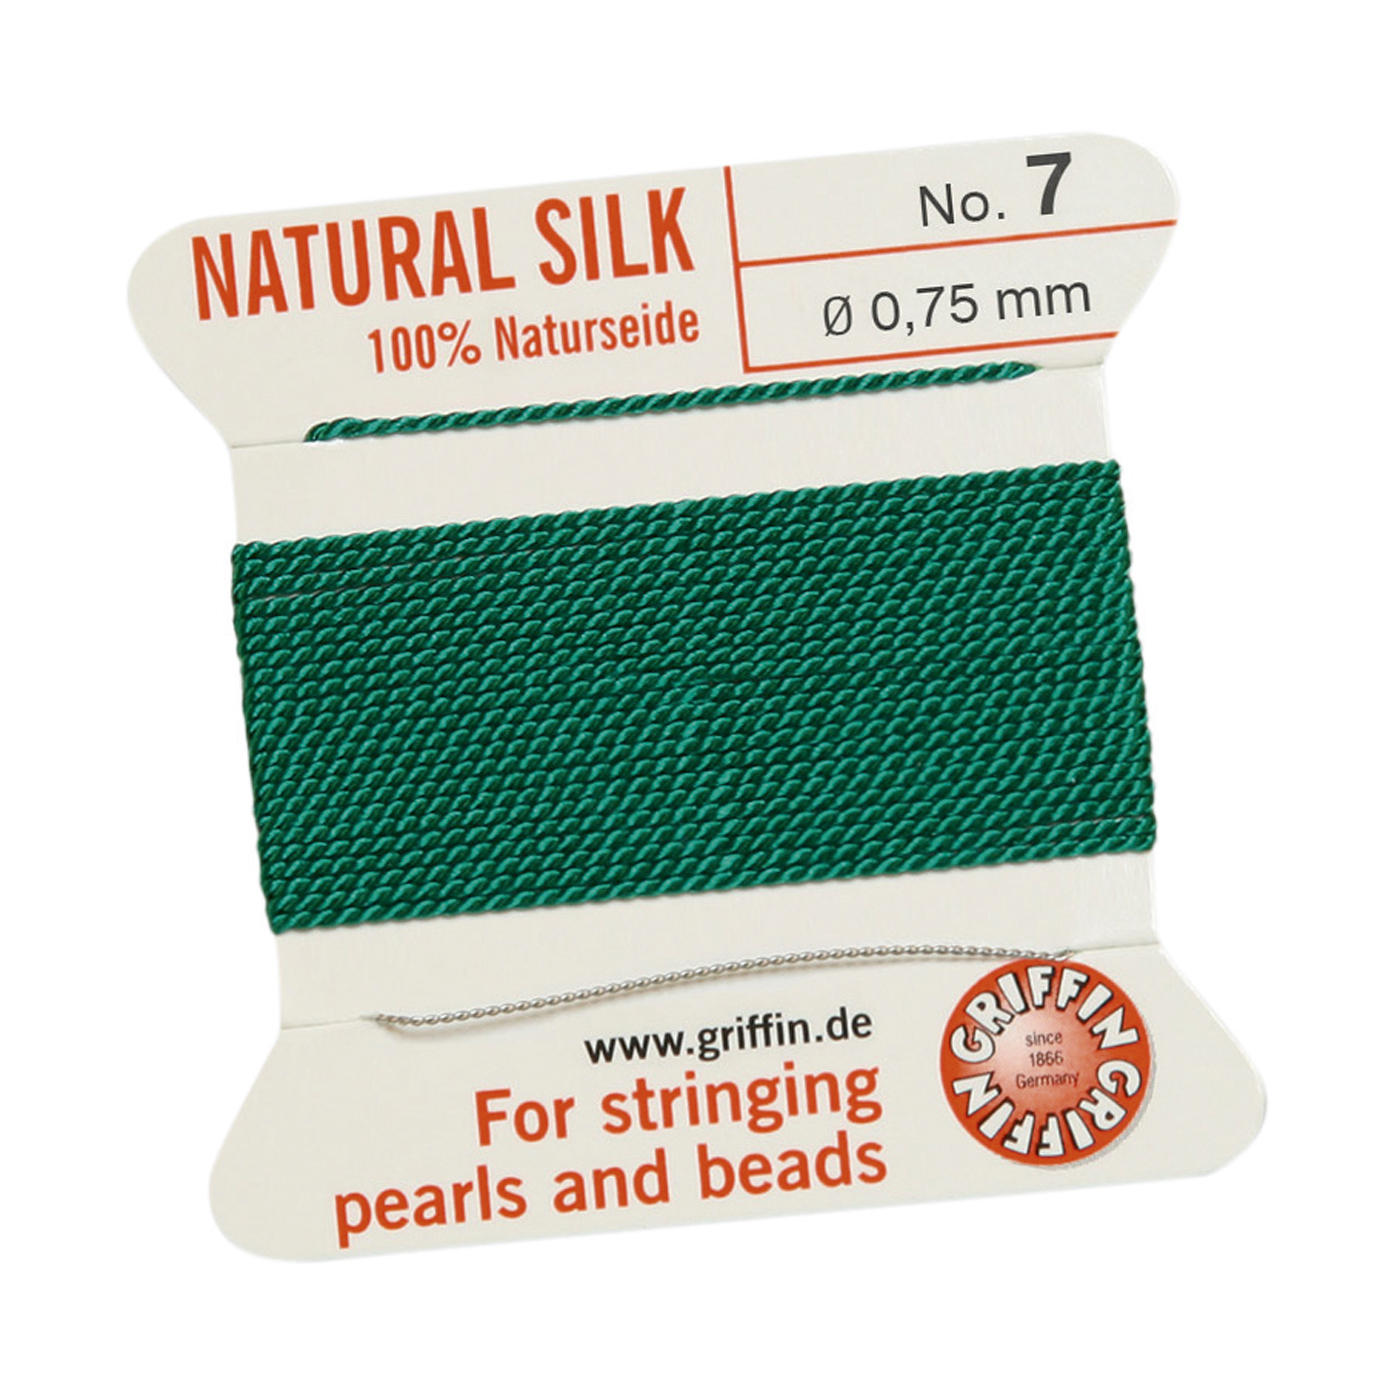 Bead Cord 100% Natural Silk, Green, No. 7 - 2 m